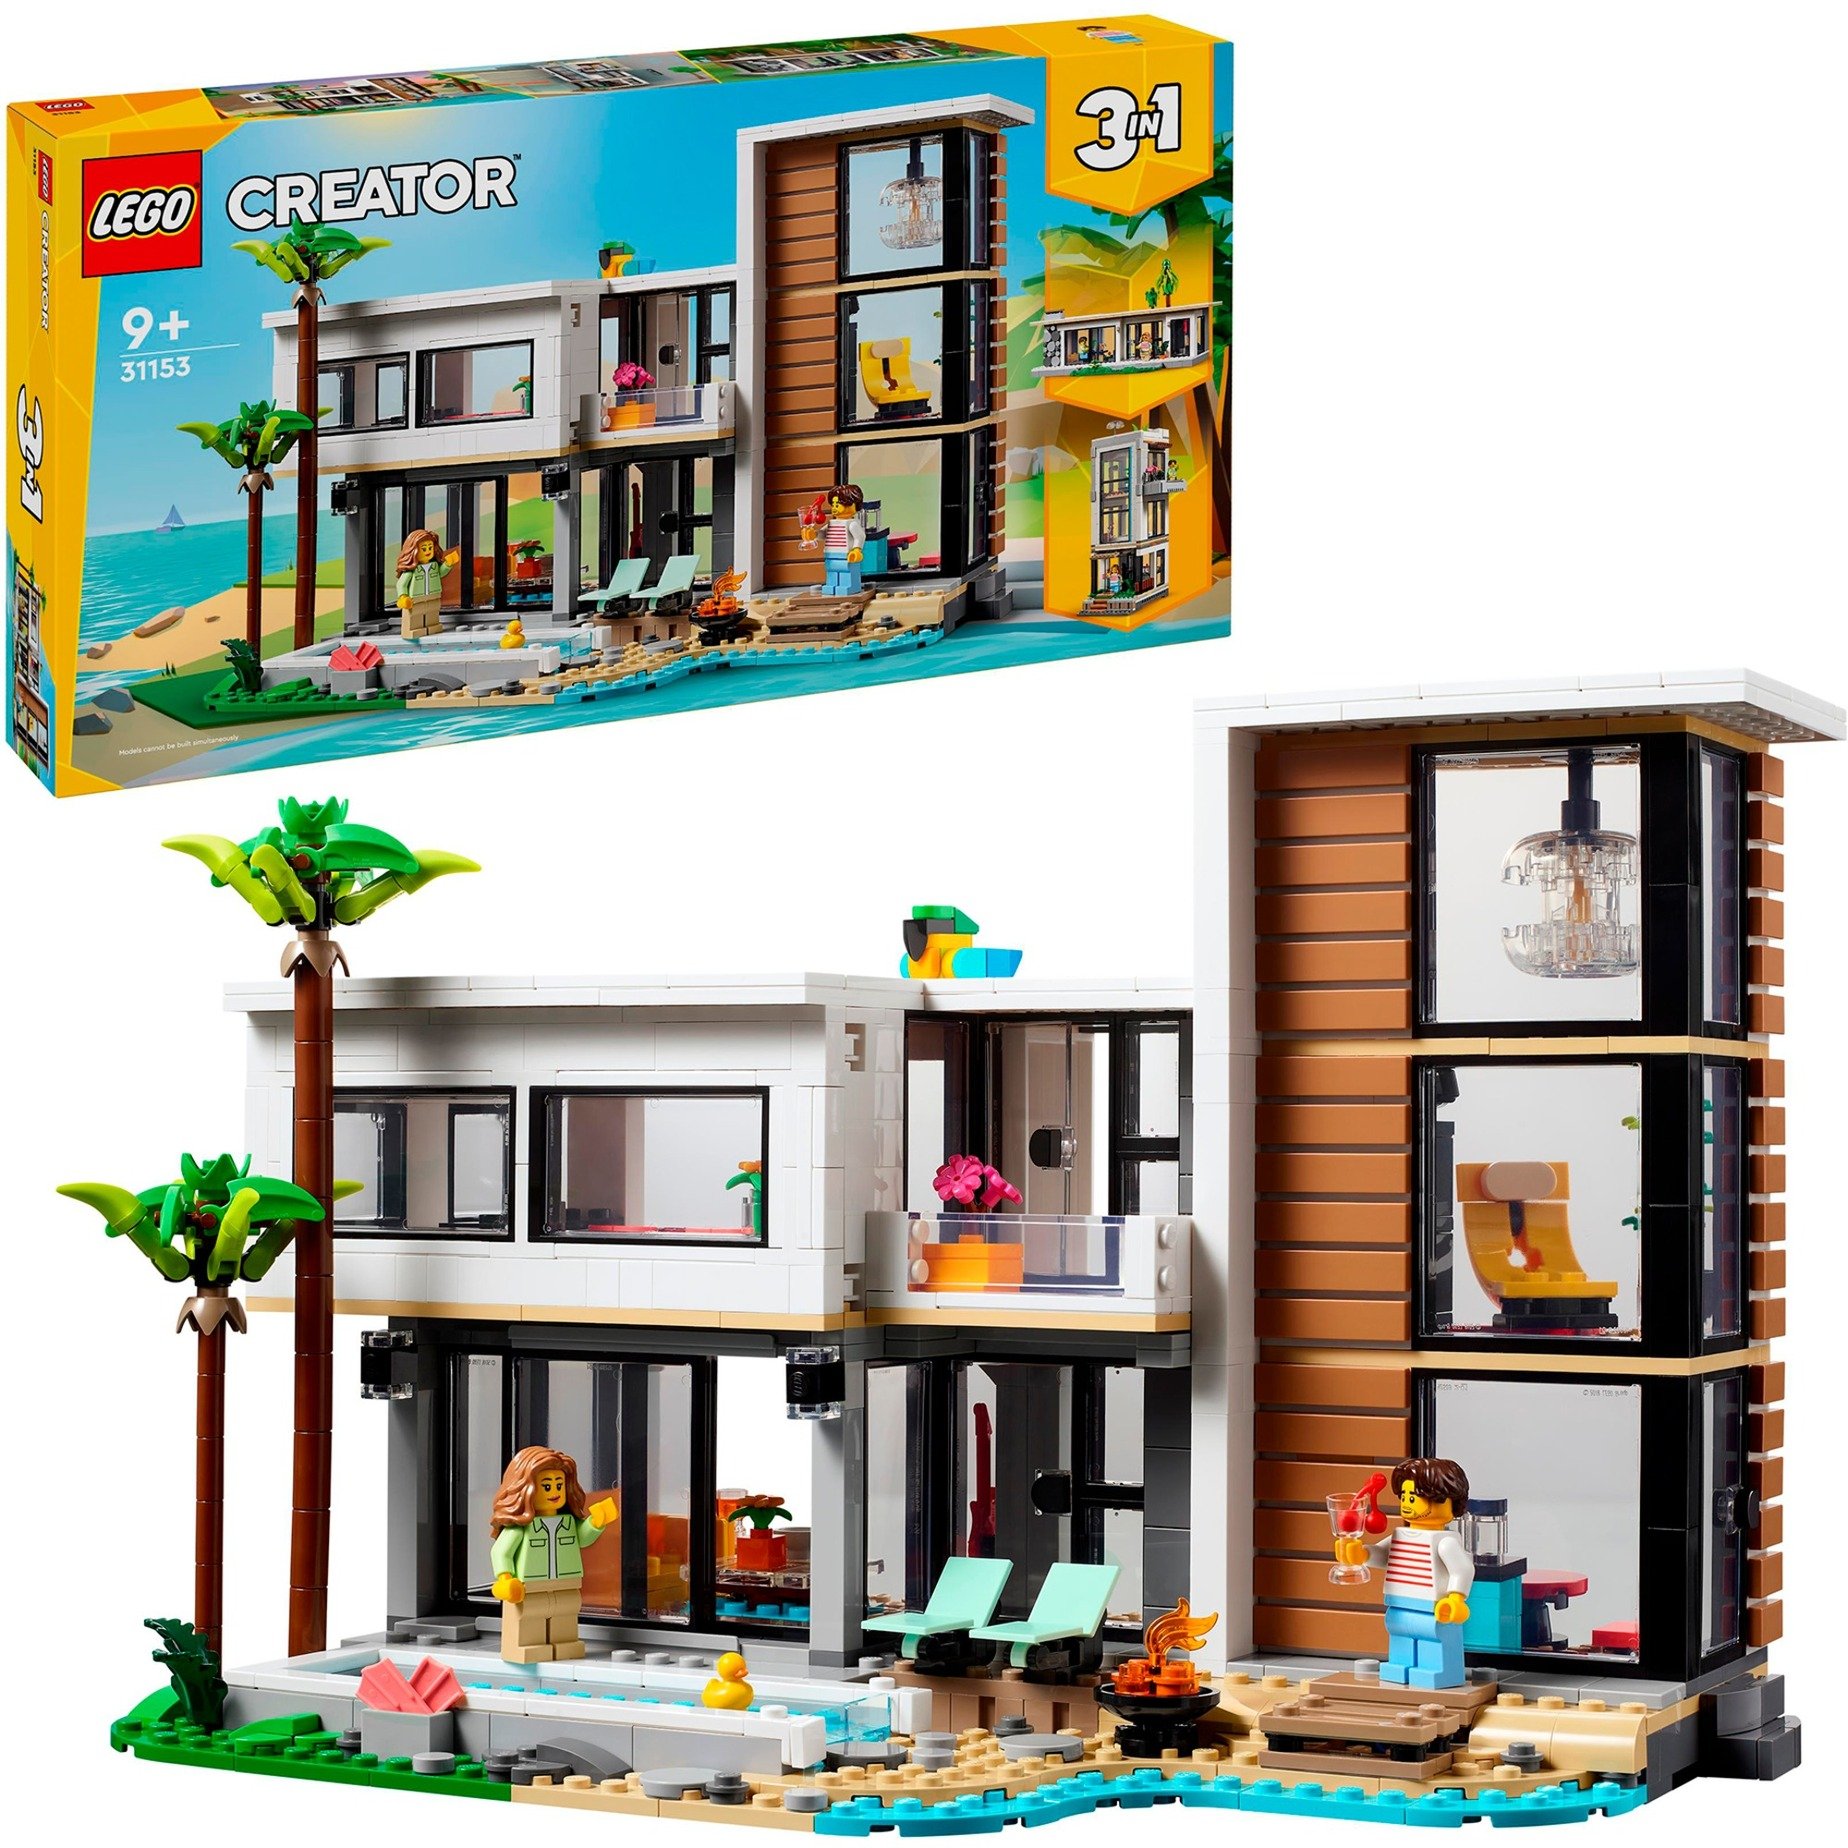 31153 Creator 3-in-1 Modernes Haus, Konstruktionsspielzeug von Lego